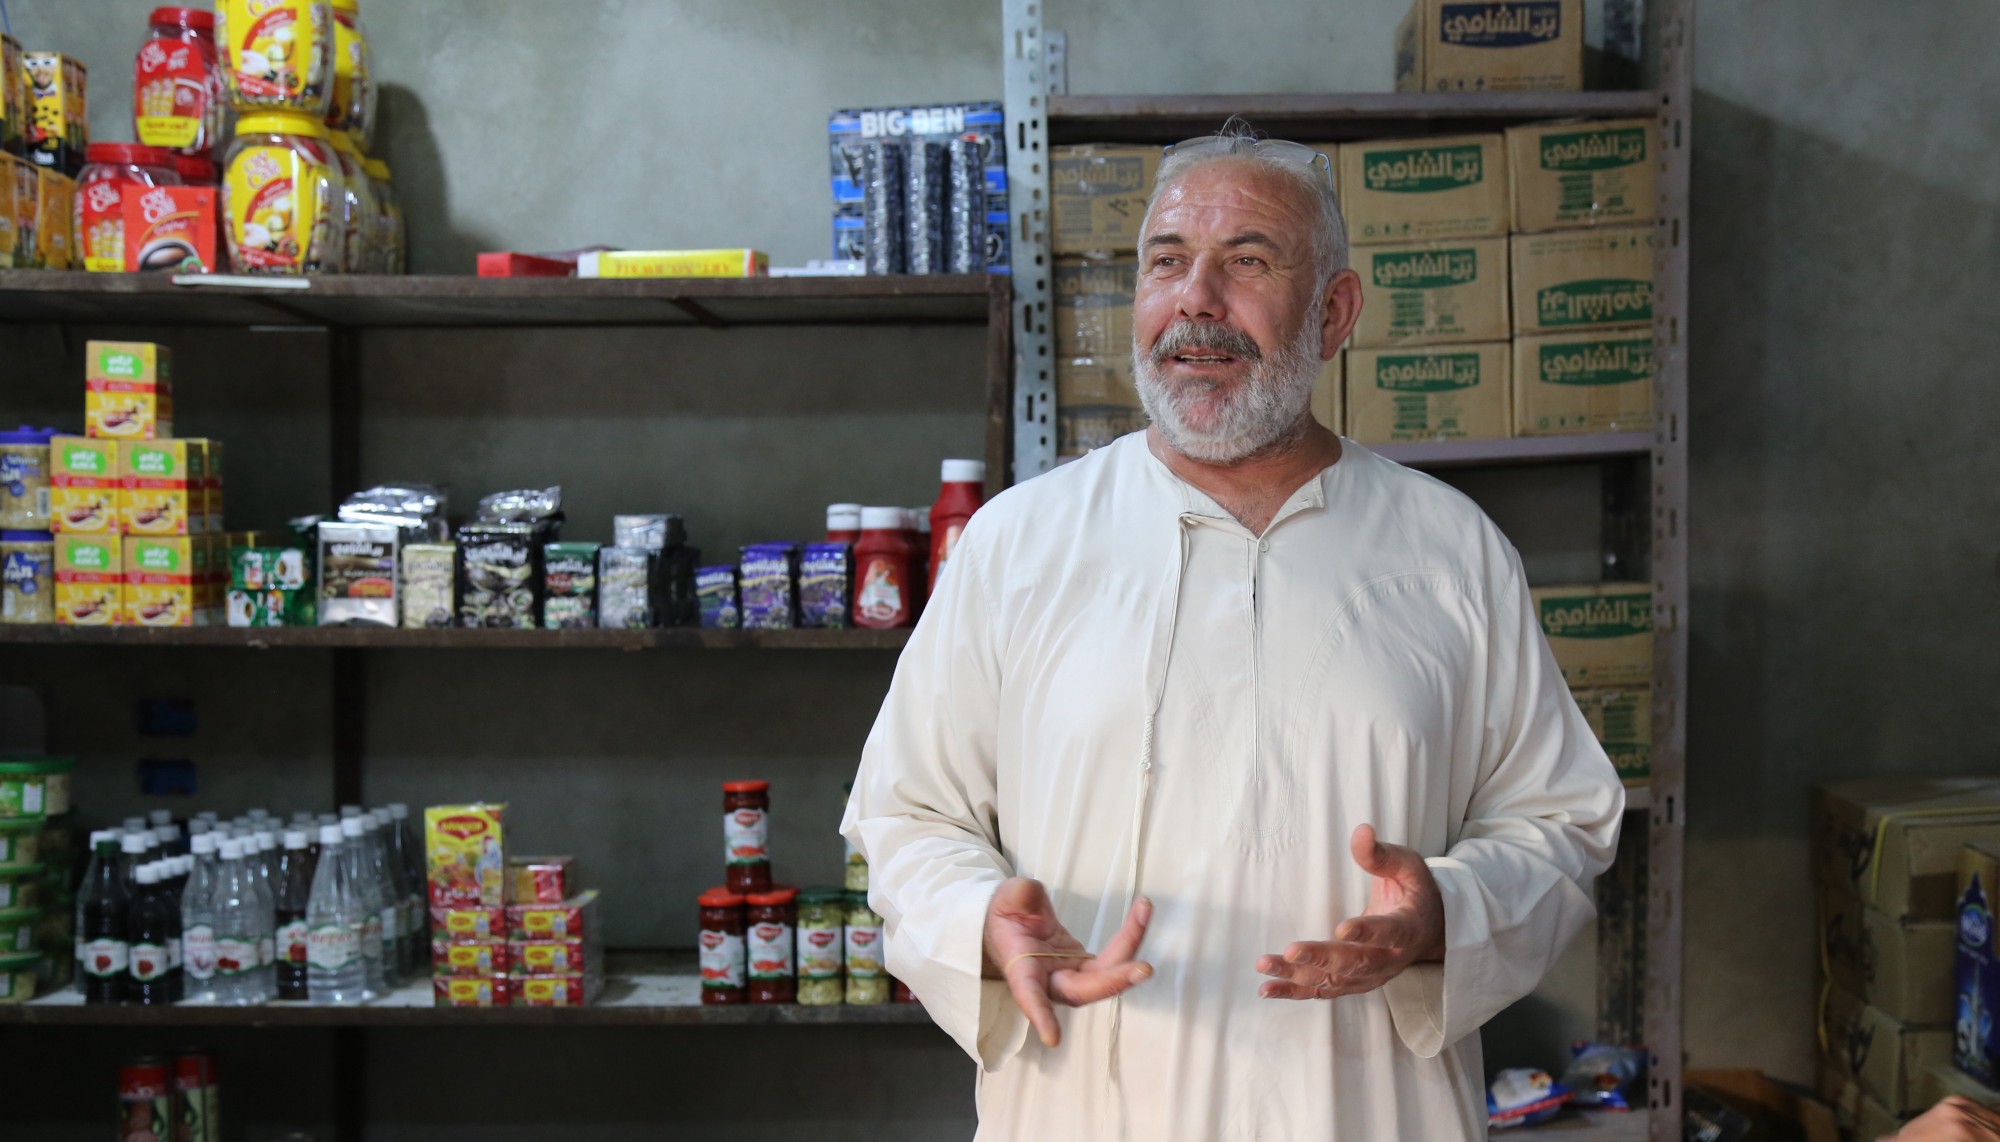 يقول محمد: إن توفر مخزون دائم من السلع يمثل تكلفة باهظة على أي متجر مثل متجره. الصورة: برنامج الأغذية العالمي/جيسيكا لوسون 